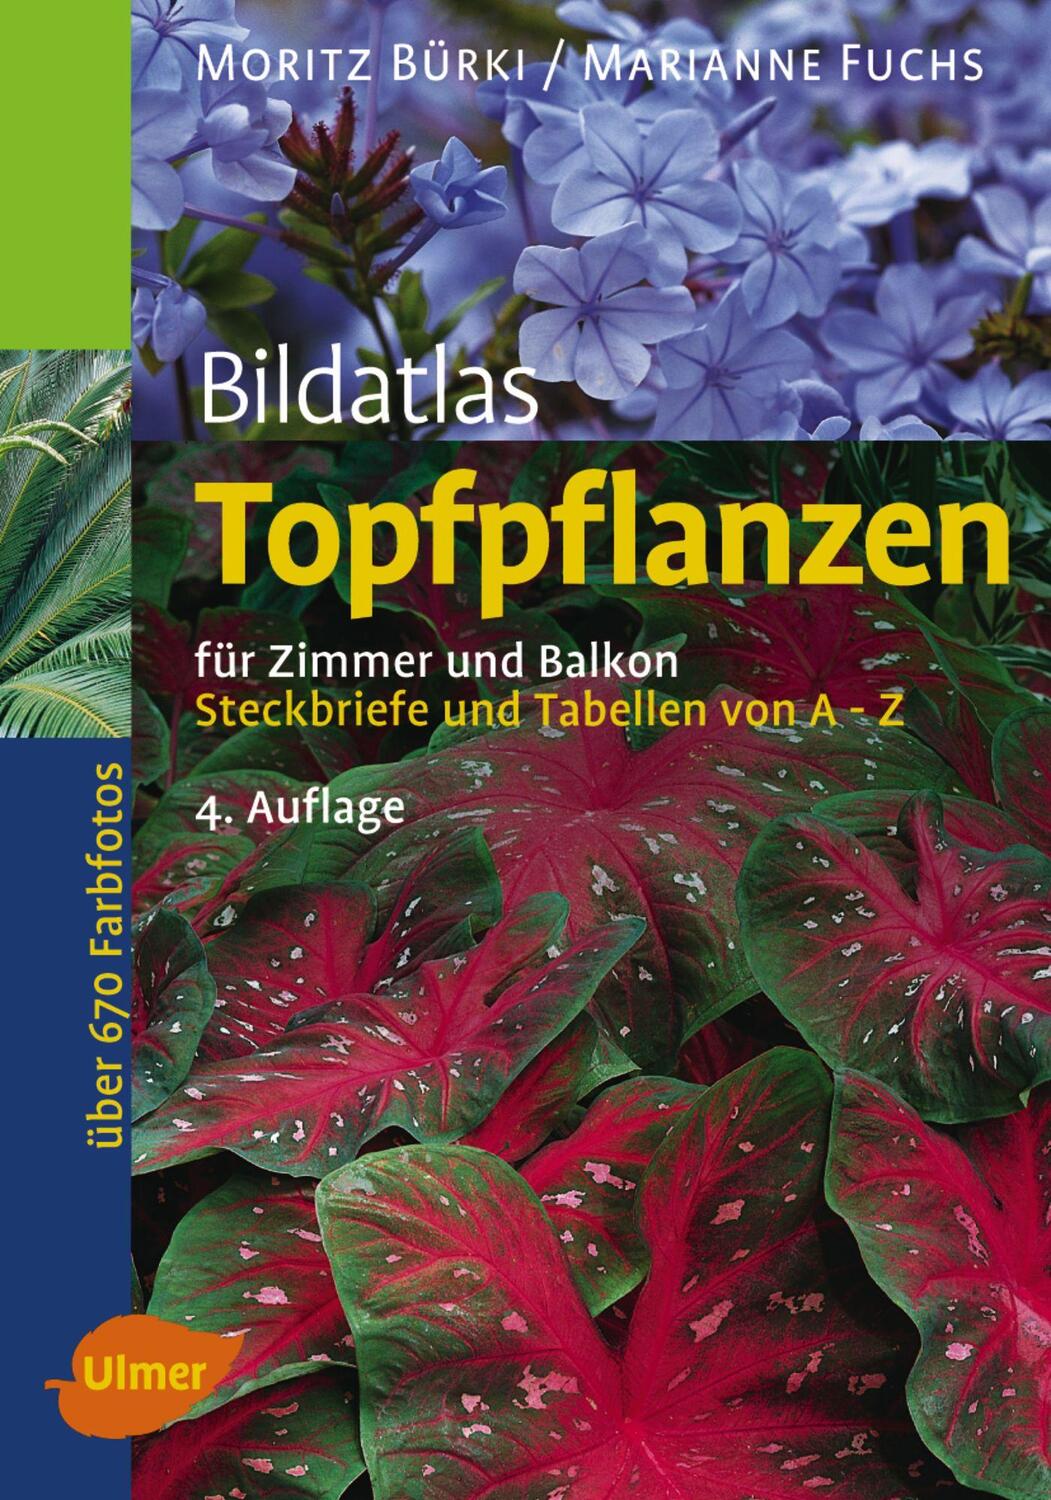 Bildatlas Topfpflanzen für Zimmer und Balkon - Bürki, Moritz